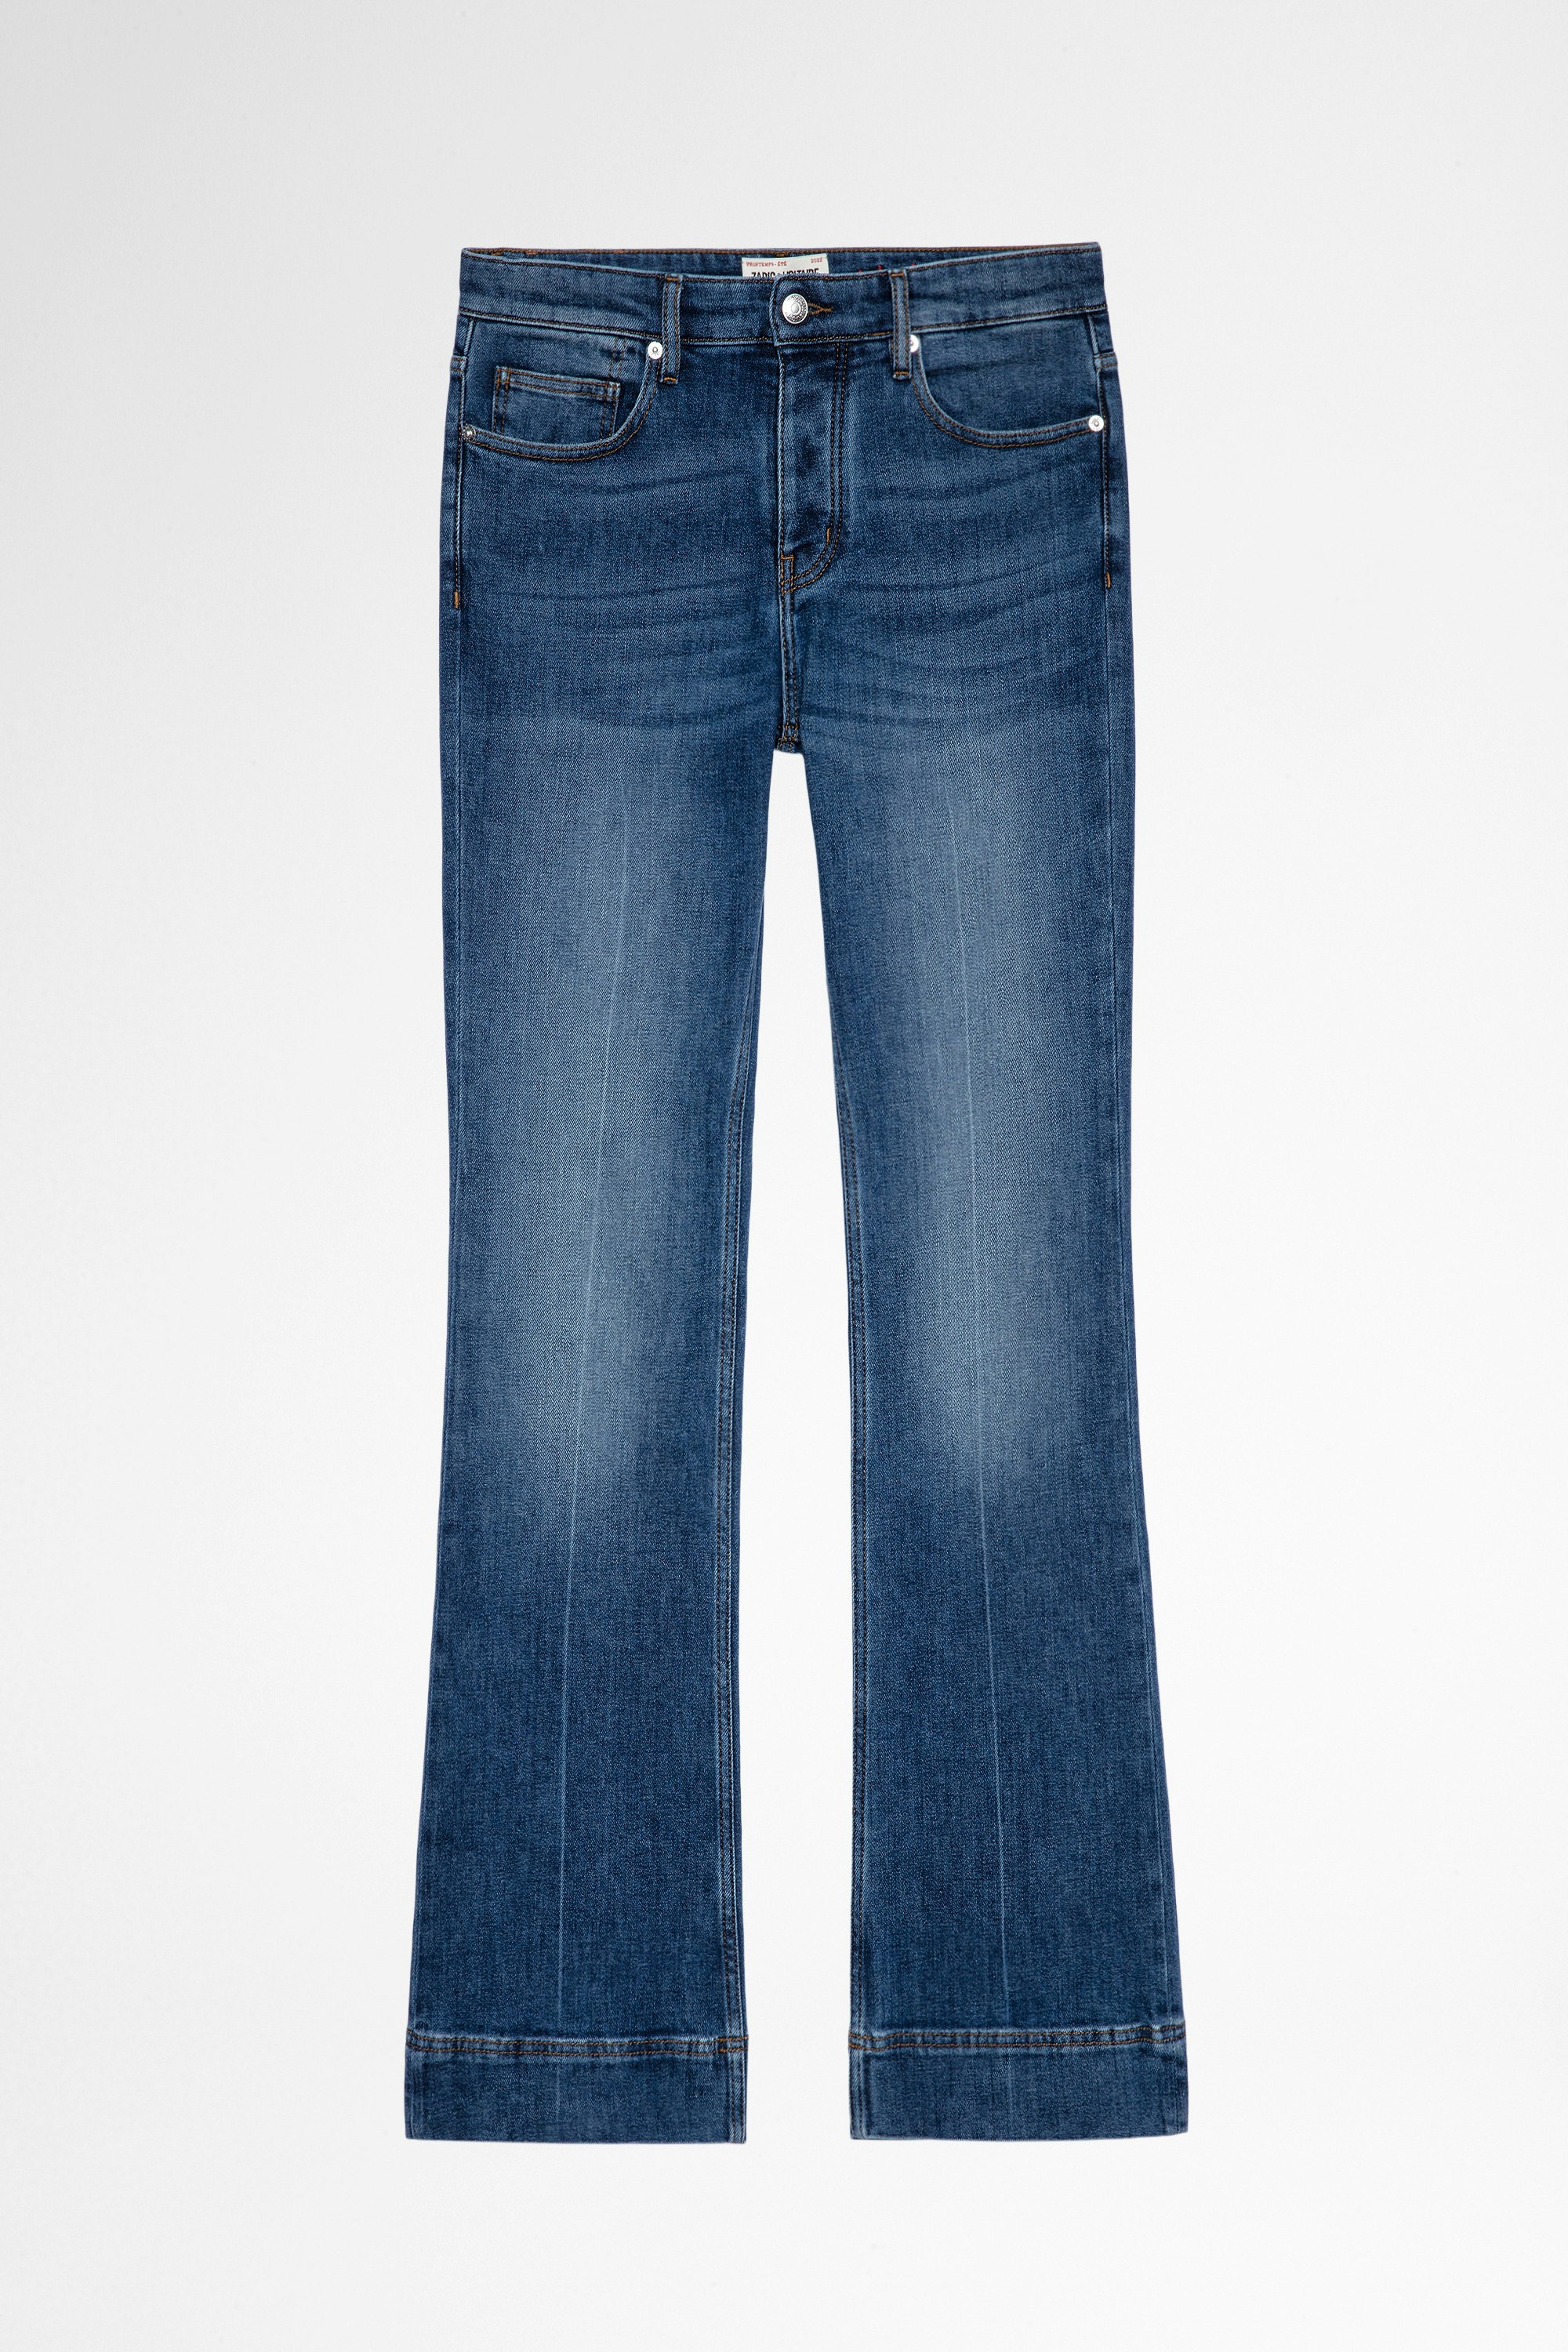 Jeans Vincente Damen-Schlagjeans aus blauem Washed-out-Denim. Hergestellt mit recycelten Fasern